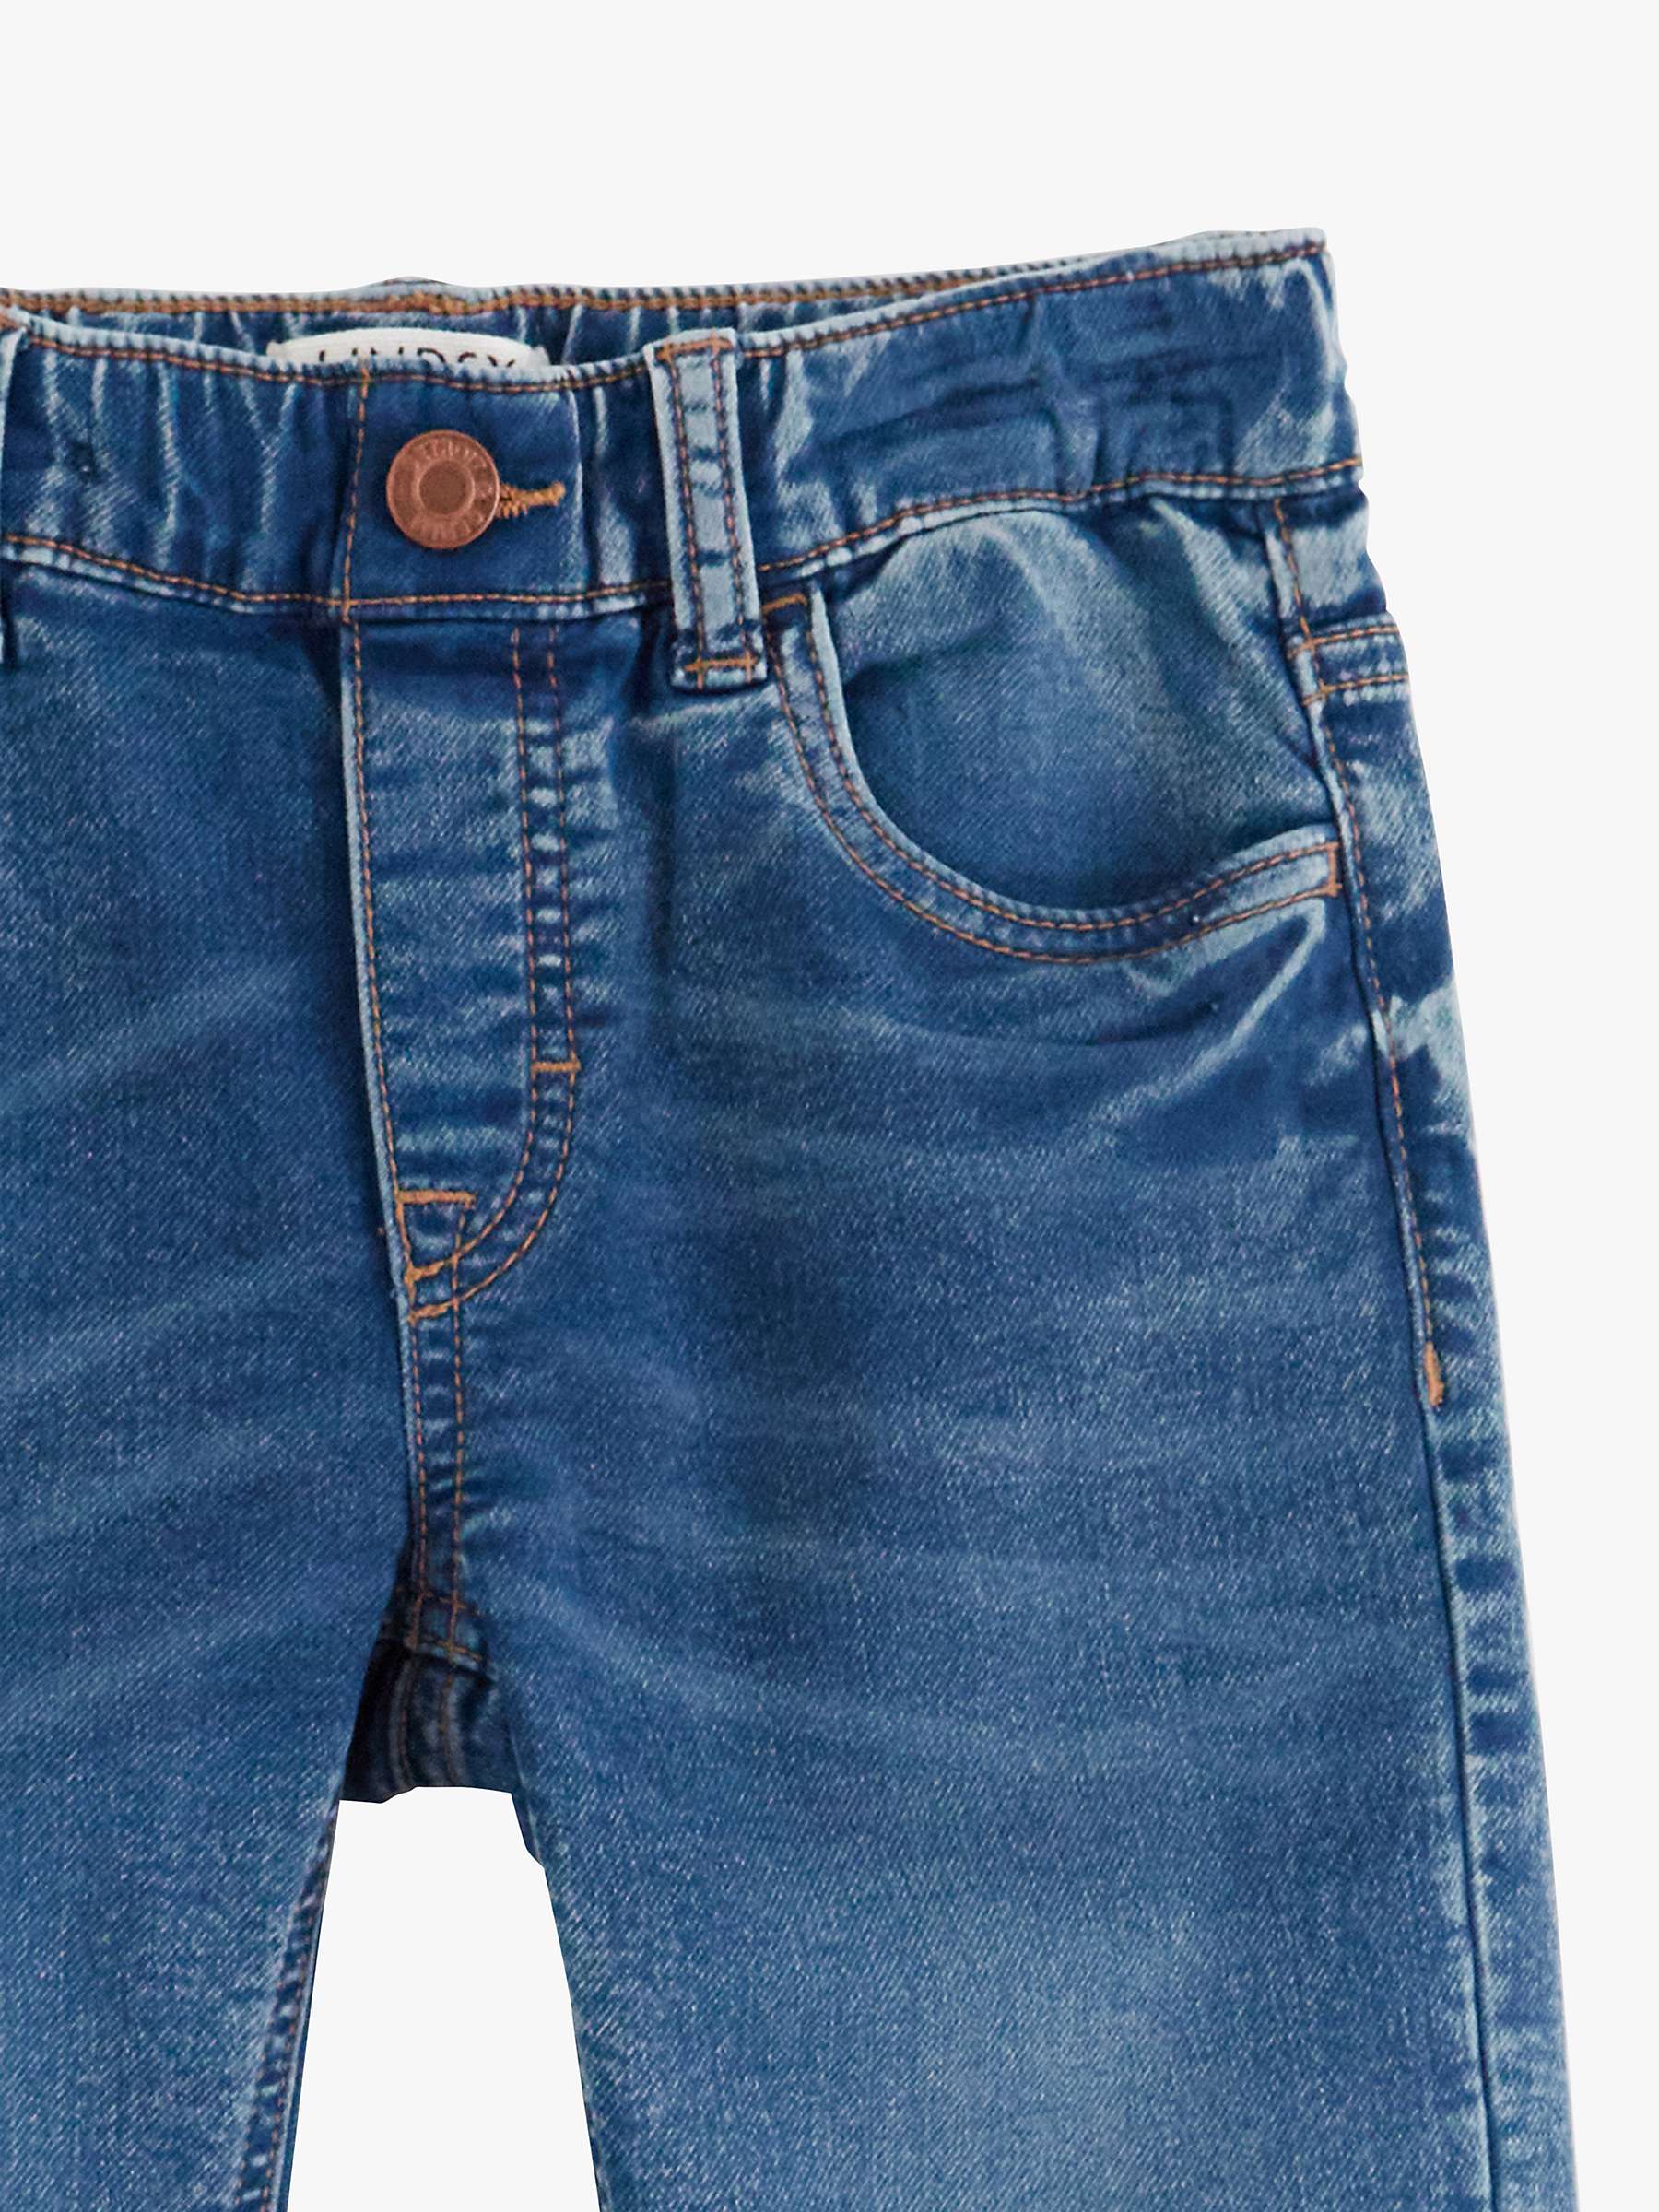 Buy Lindex Kids' Staffan Denim Jeans, Blue Online at johnlewis.com